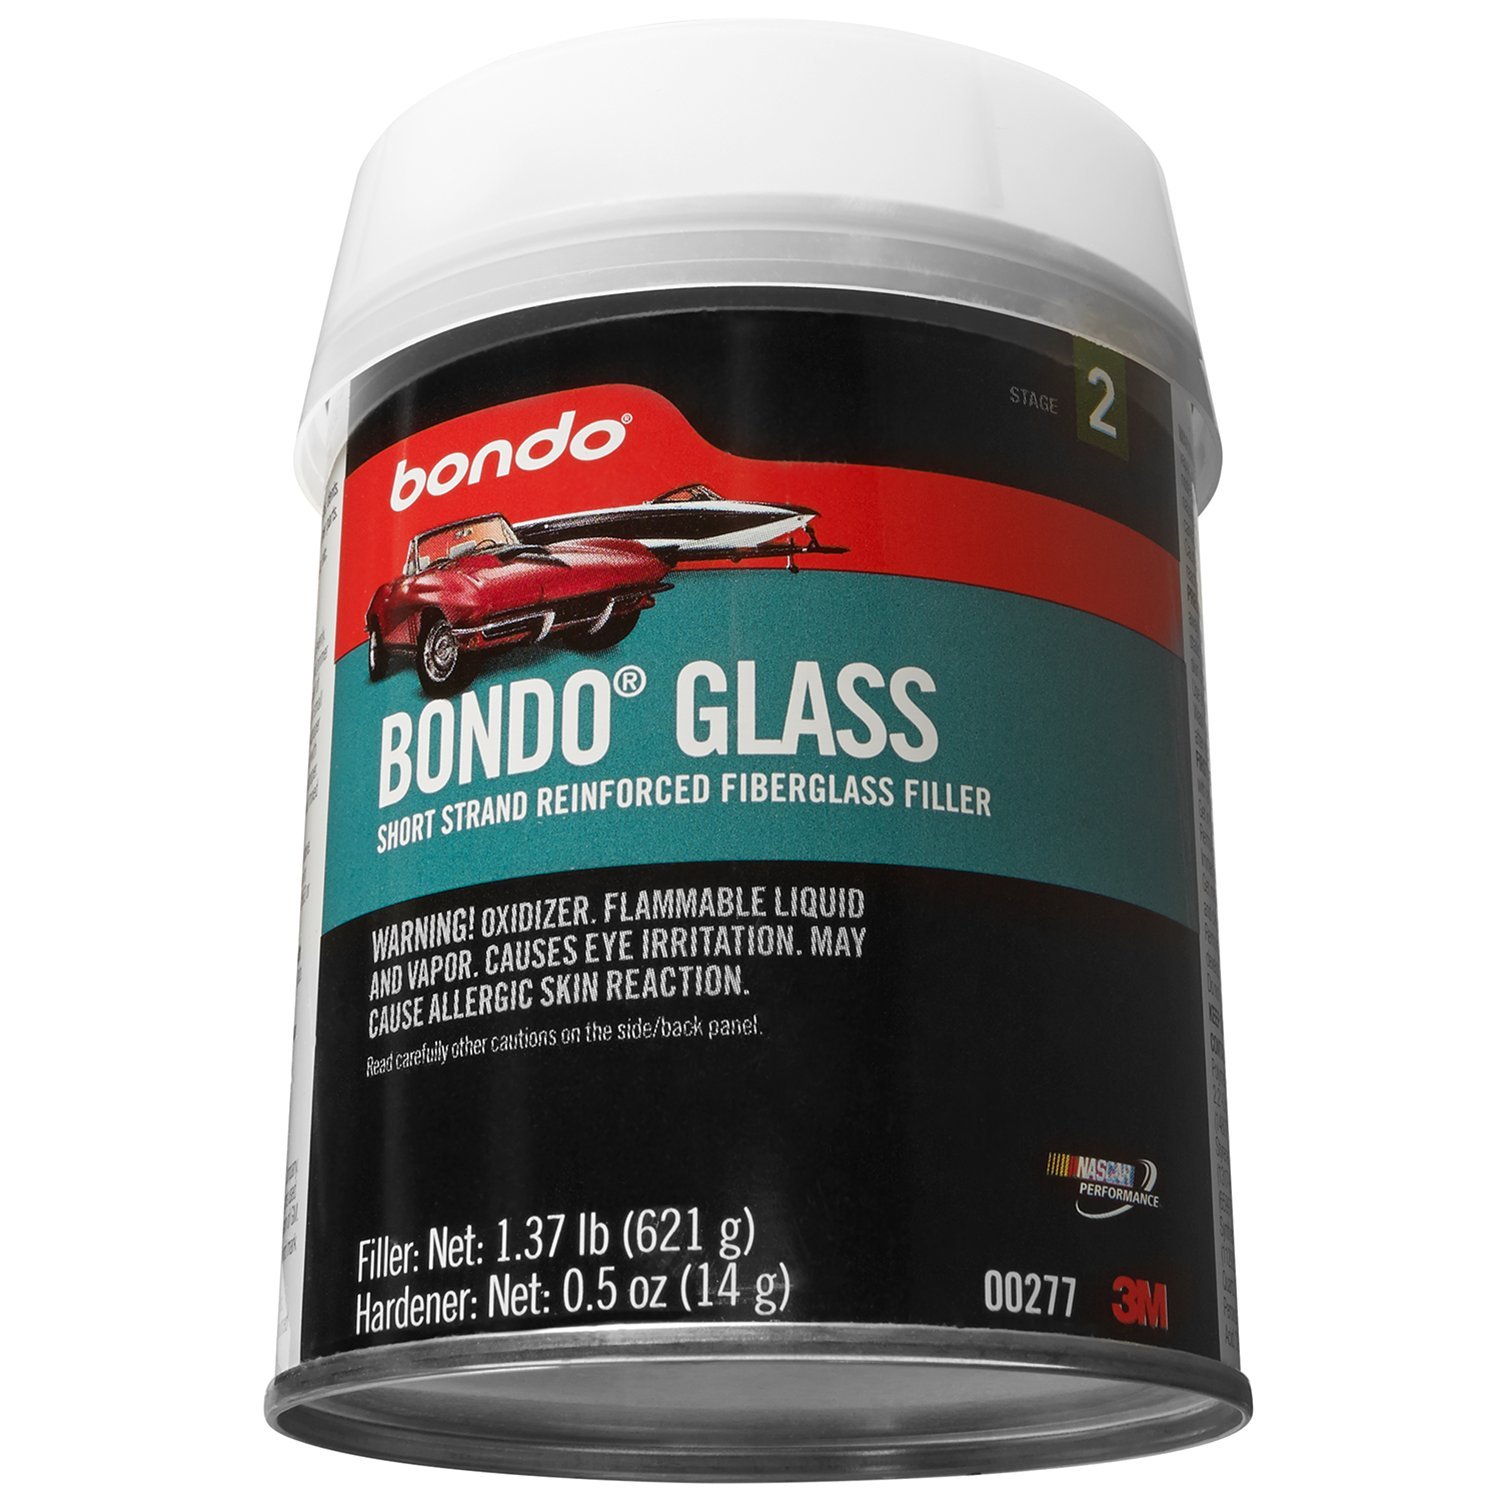 Bondo Glass, Short Strand Reinforced Fiberglass Filler, Stage 2, 1.37 lbs. Filler with 0.5 oz Hardener